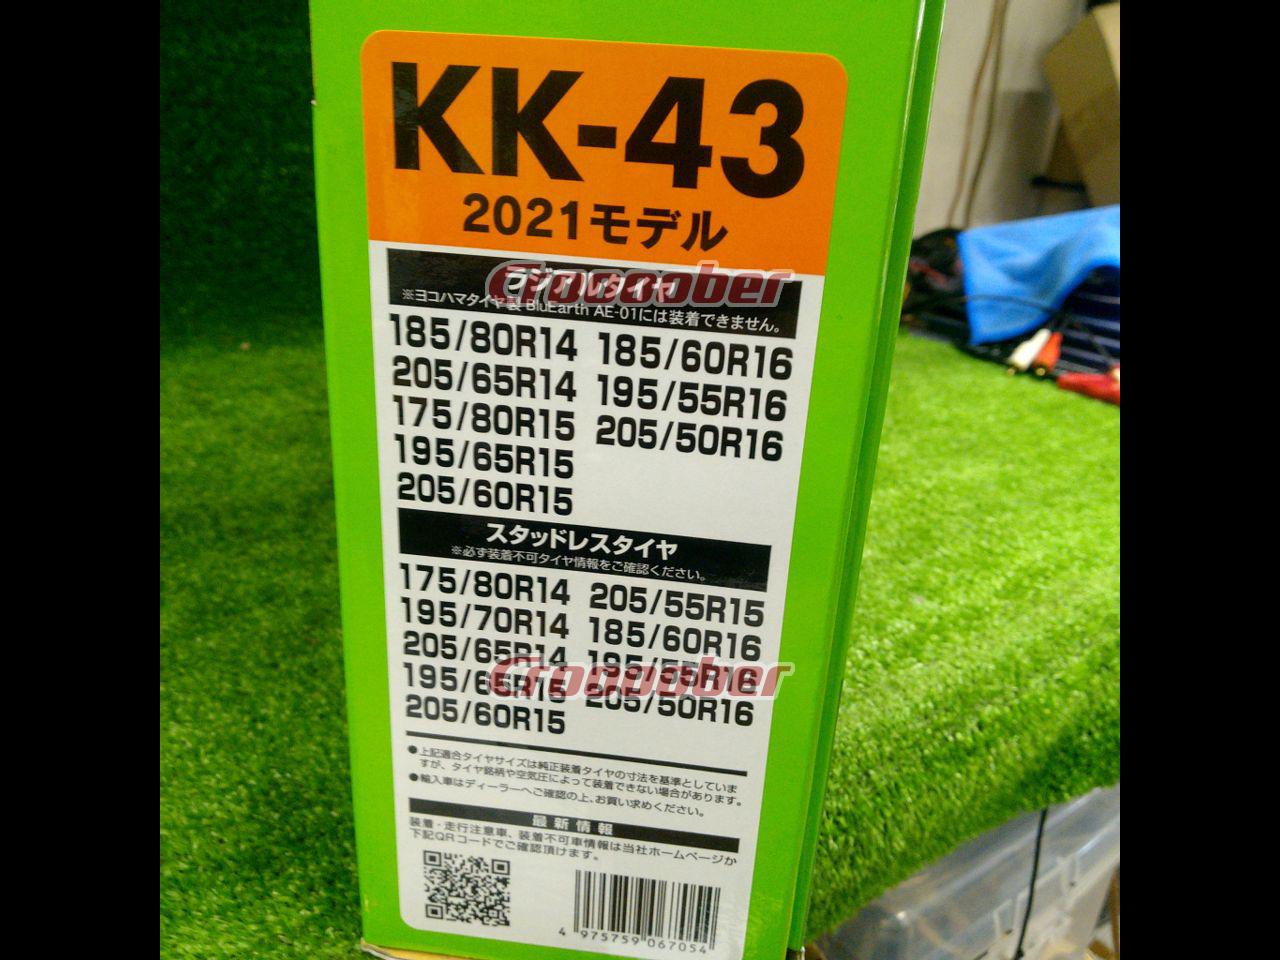 ソフト99コーポレーション 救急隊ネット KK-43 2021年モデル【値下げ 